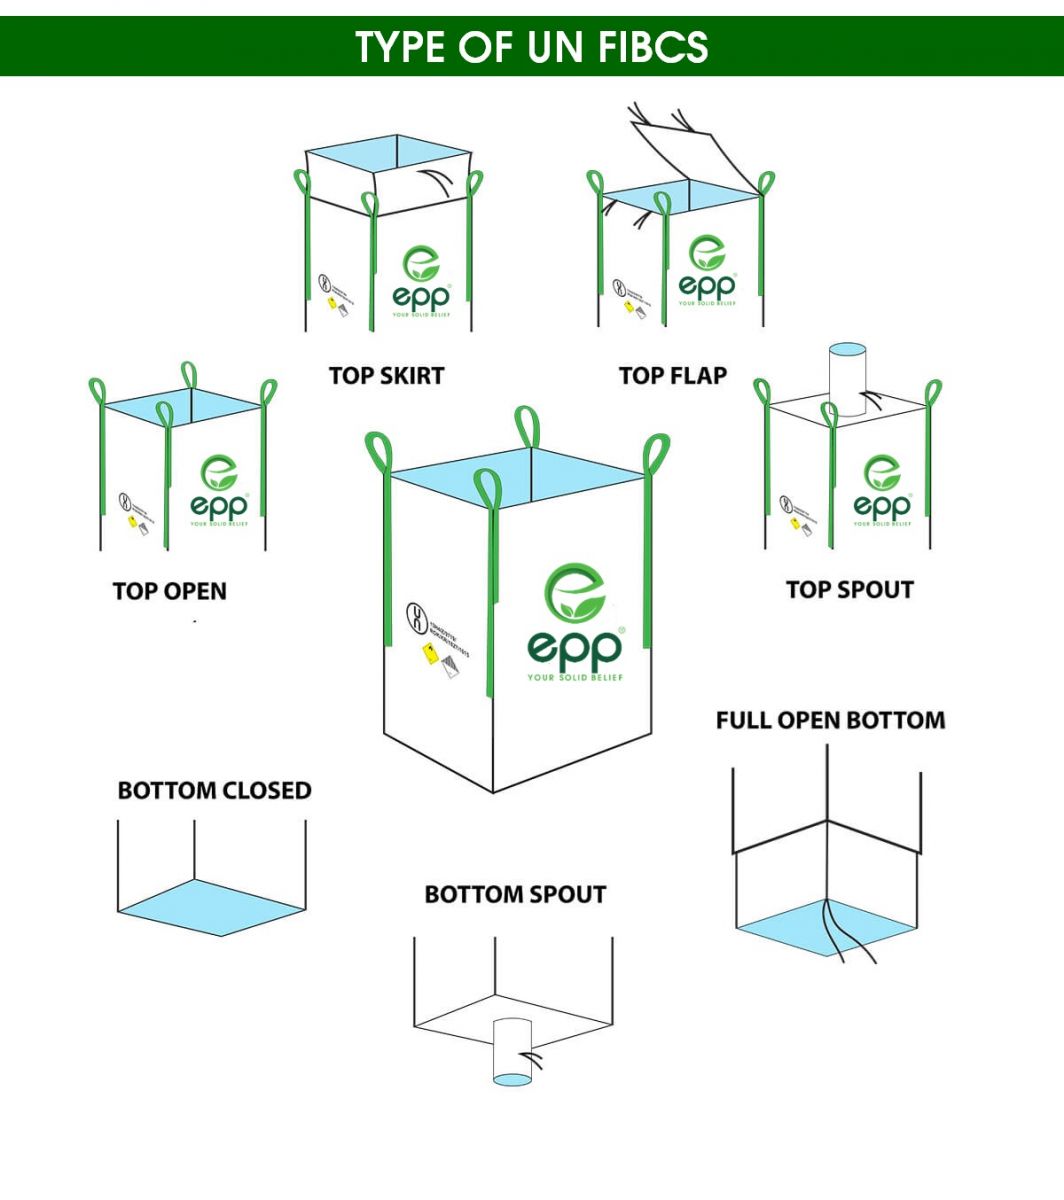 UN standard bulk bag for hazardous materials with filling spout